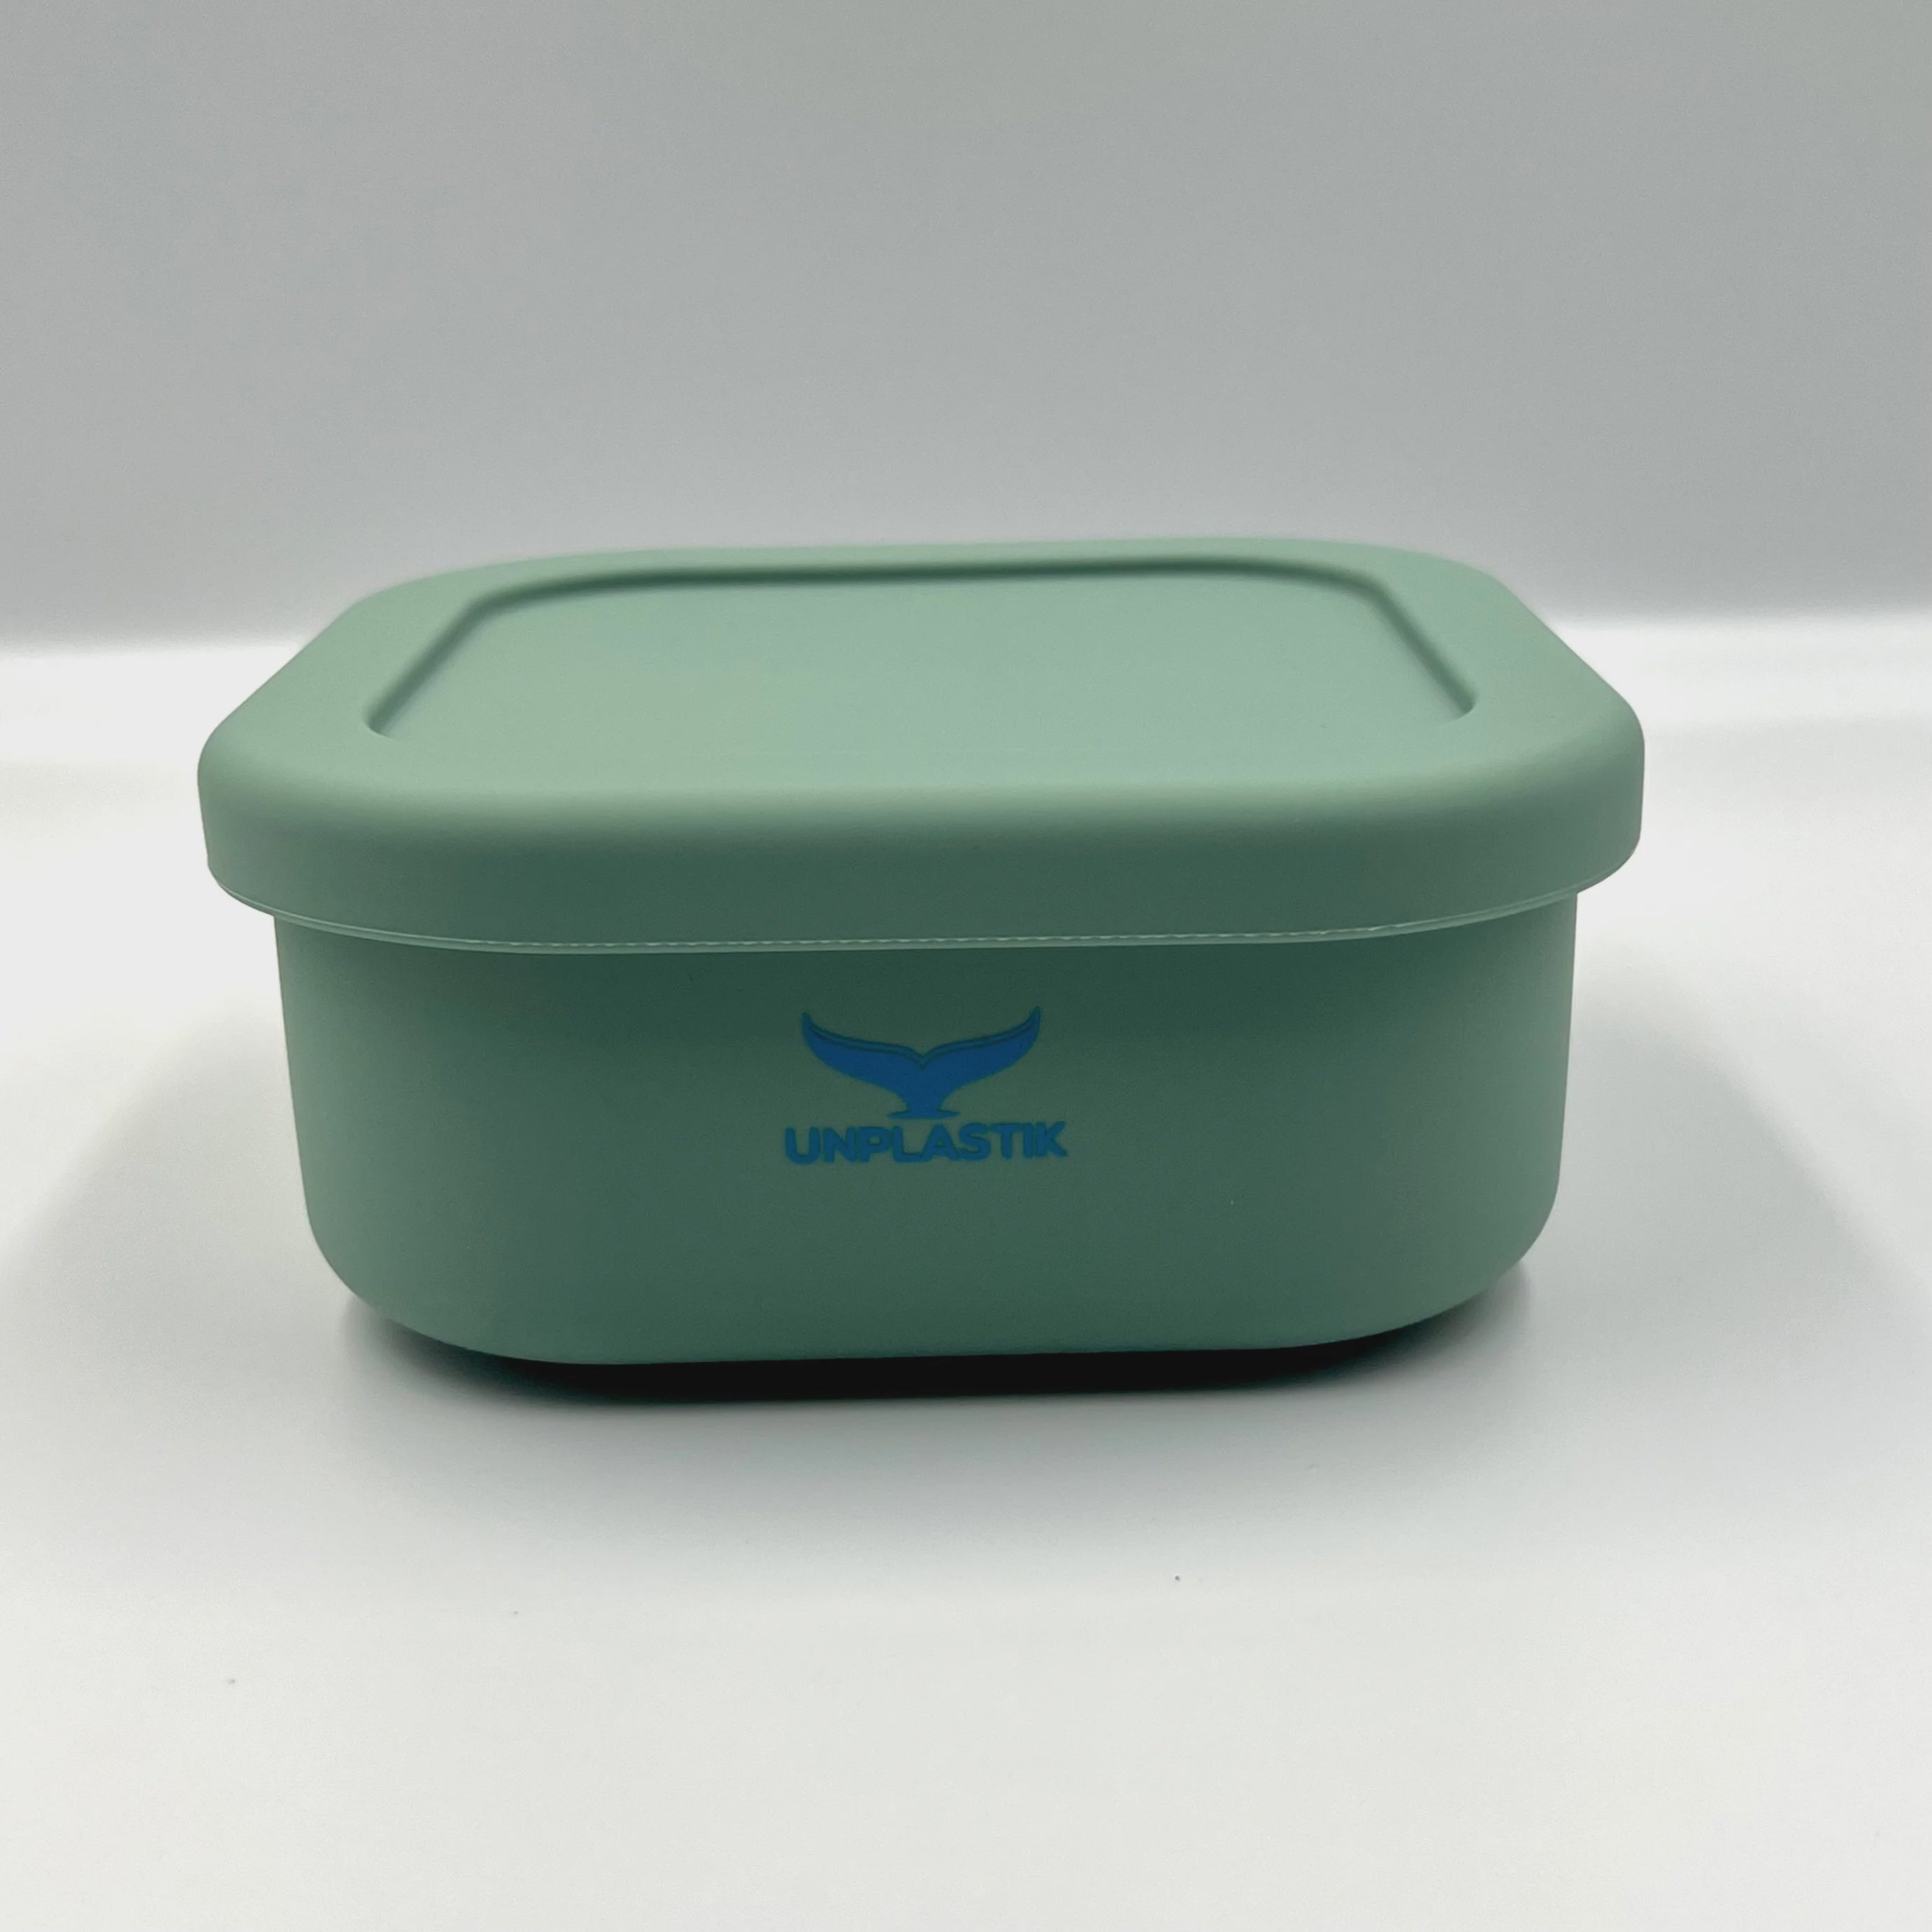 Unplastik Square Lunch Box - Green